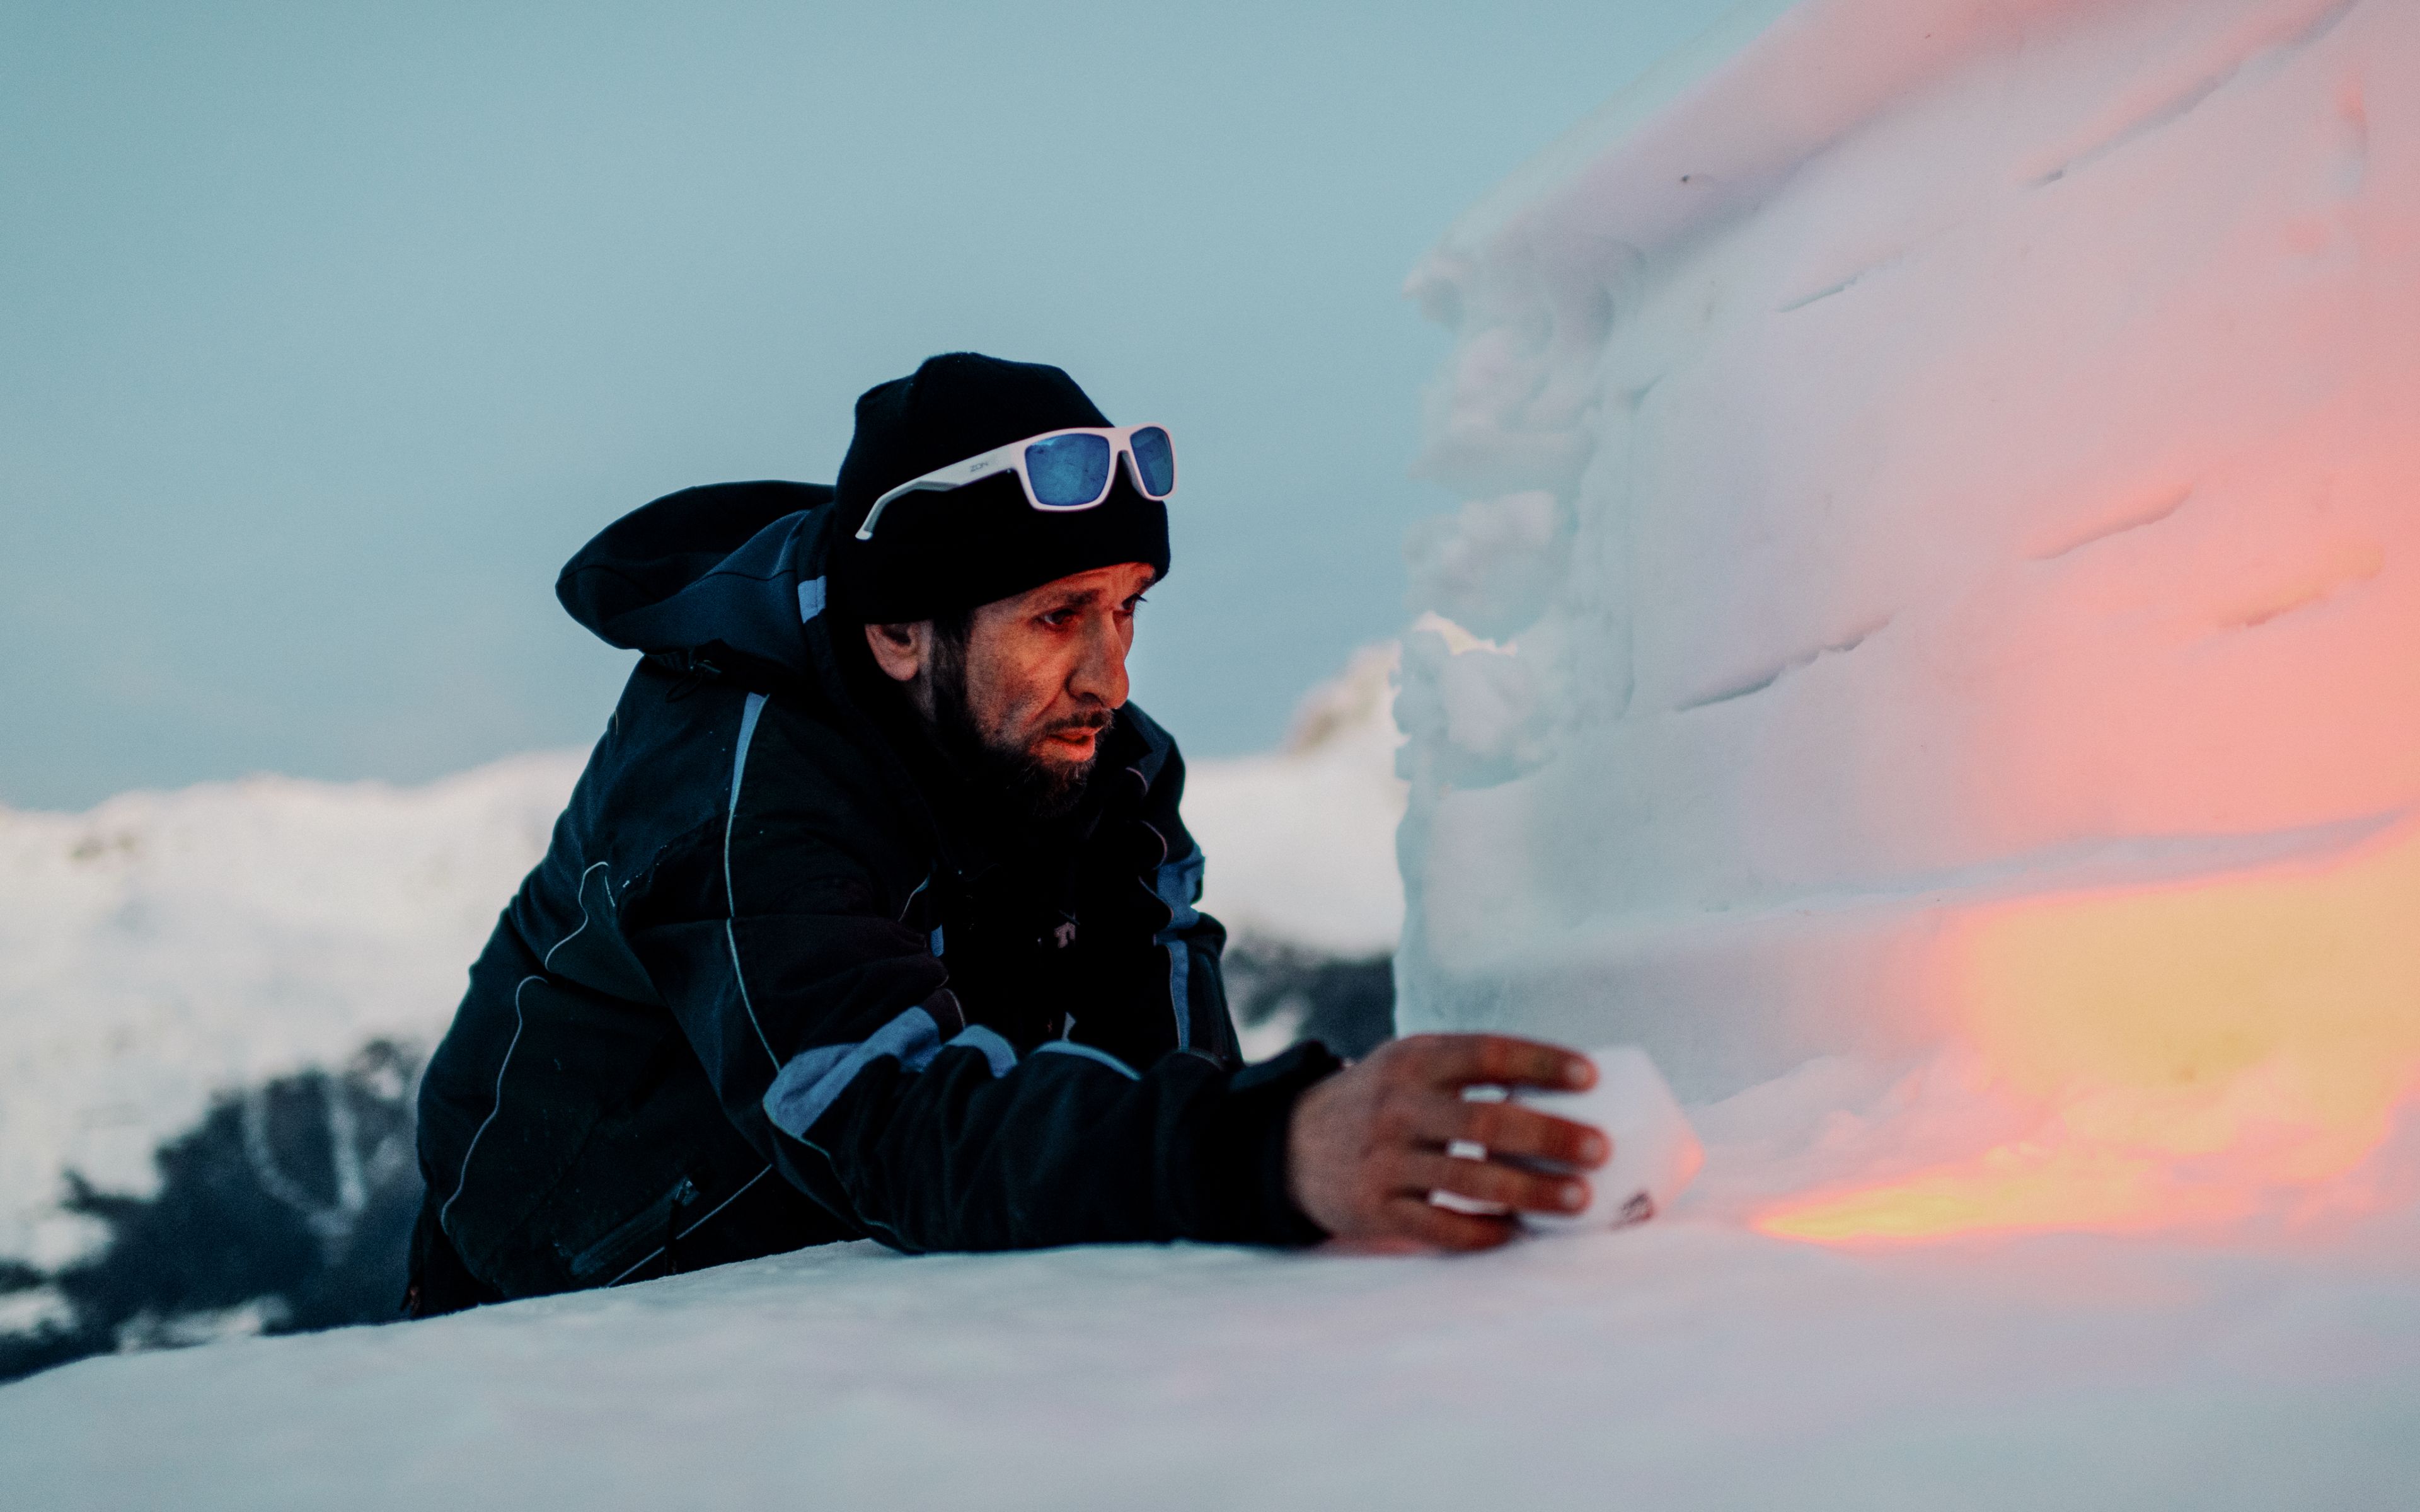 Après son service sur le téléski, Marcio s'attarde souvent un moment près de sa sculpture sur neige, Valais, Suisse